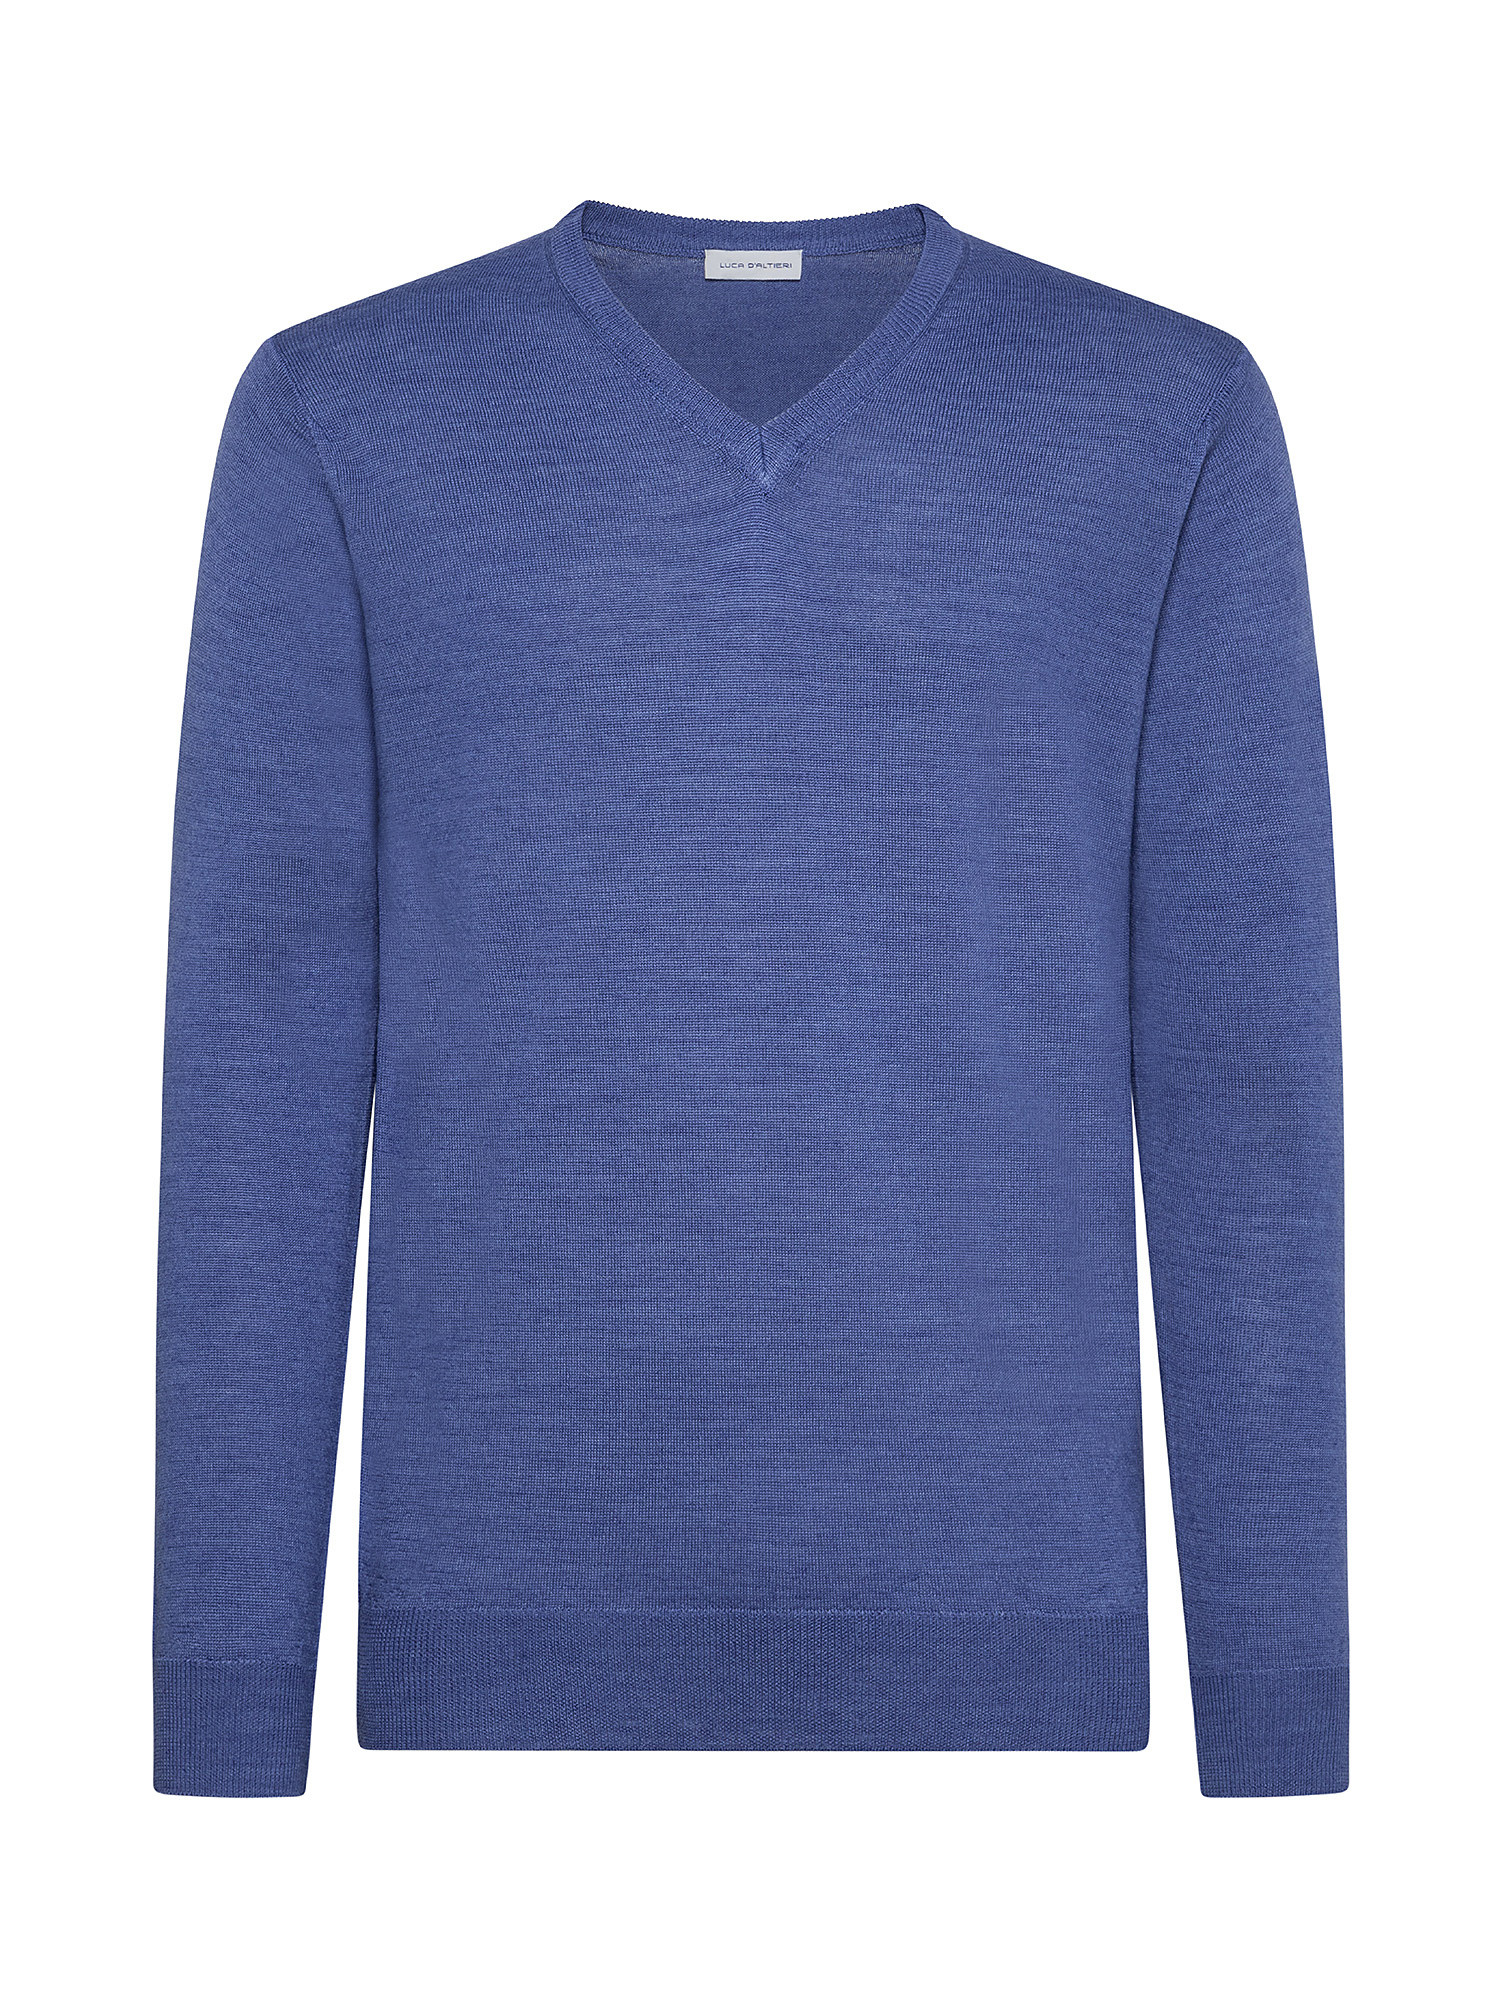 Merino Blend V-neck sweater - Machine washable, Aviation Blue, large image number 0